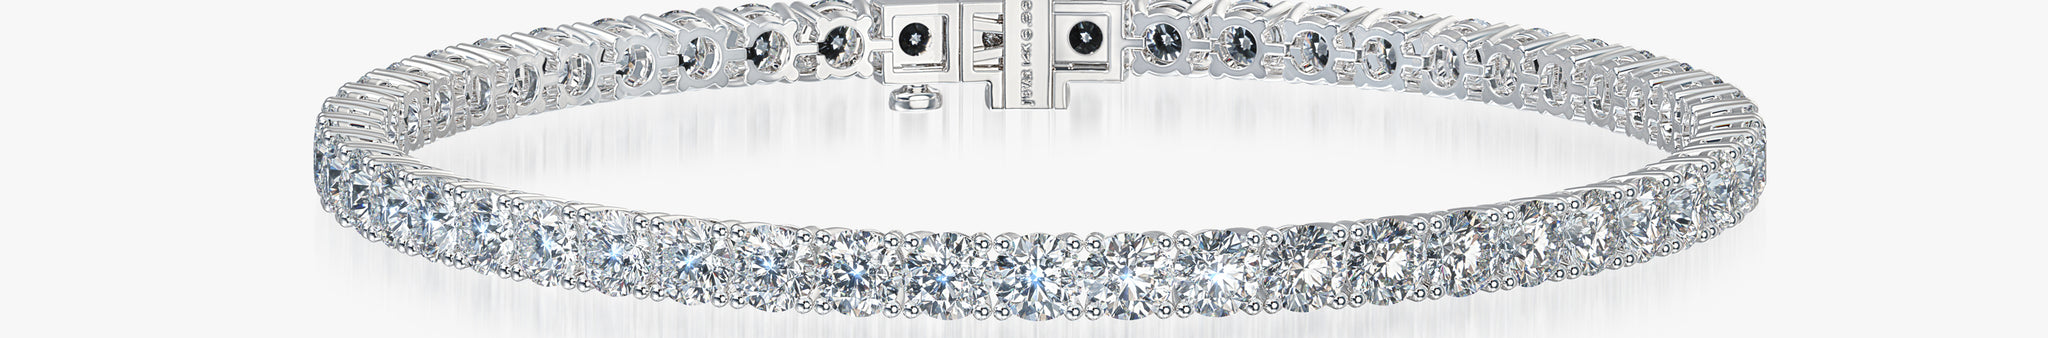 J'EVAR 14KT White Gold Classic ALTR Lab Grown Diamond Tennis Bracelet Front View